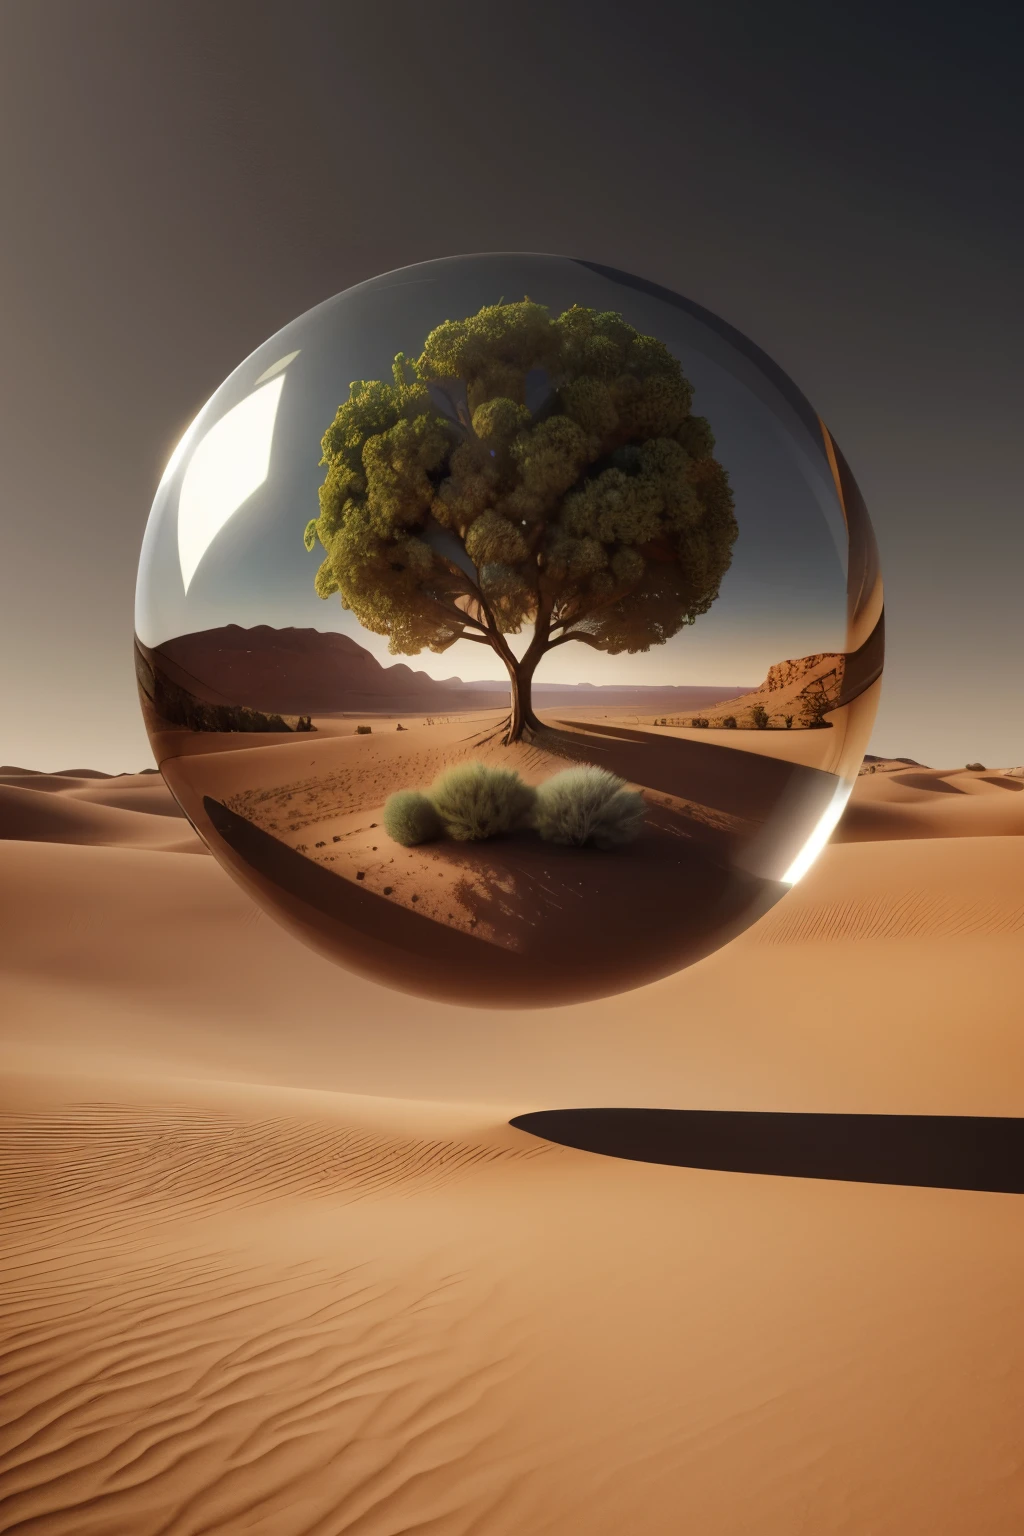 صورة عرفية لشجرة داخل كرة زجاجية على منظر طبيعي صحراوي, شجرة الحياة داخل الكرة, العمل الفني الرقمي السريالي, السريالية 8K, الفن الرقمي السريالي, فن سريالي, تقديم سريالي 3D, تقديم الفن الرقمي ثلاثي الأبعاد, مارك آدامز, فن مفهوم سريالي, 3 د تقديم صفارة, الفن الرقمي منمنمة, 4 ك السريالية